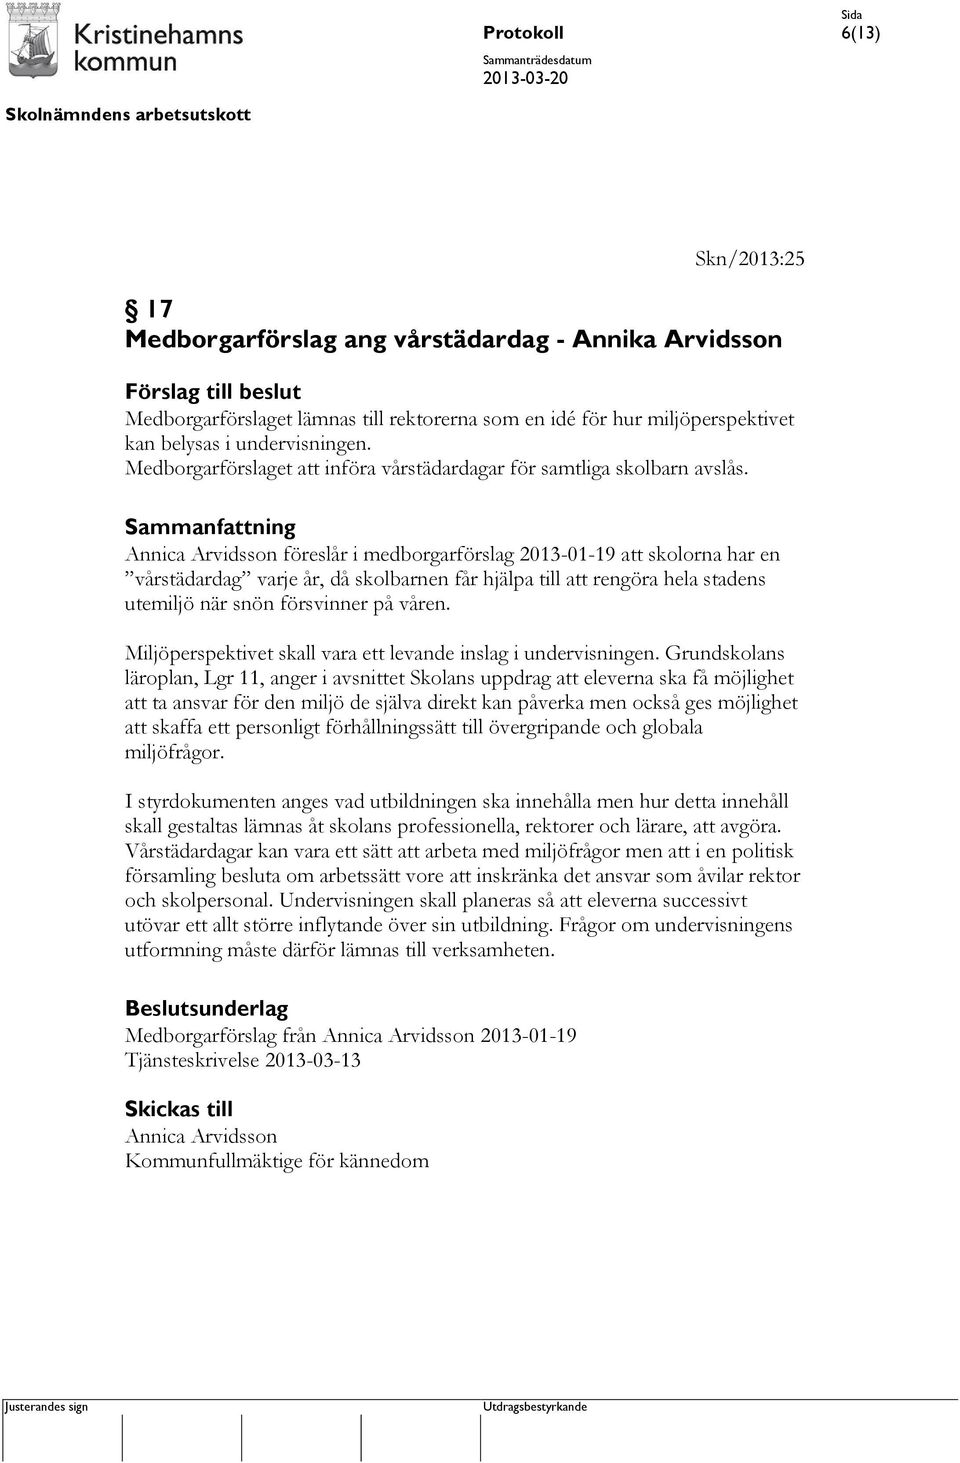 Annica Arvidsson föreslår i medborgarförslag 2013-01-19 att skolorna har en vårstädardag varje år, då skolbarnen får hjälpa till att rengöra hela stadens utemiljö när snön försvinner på våren.